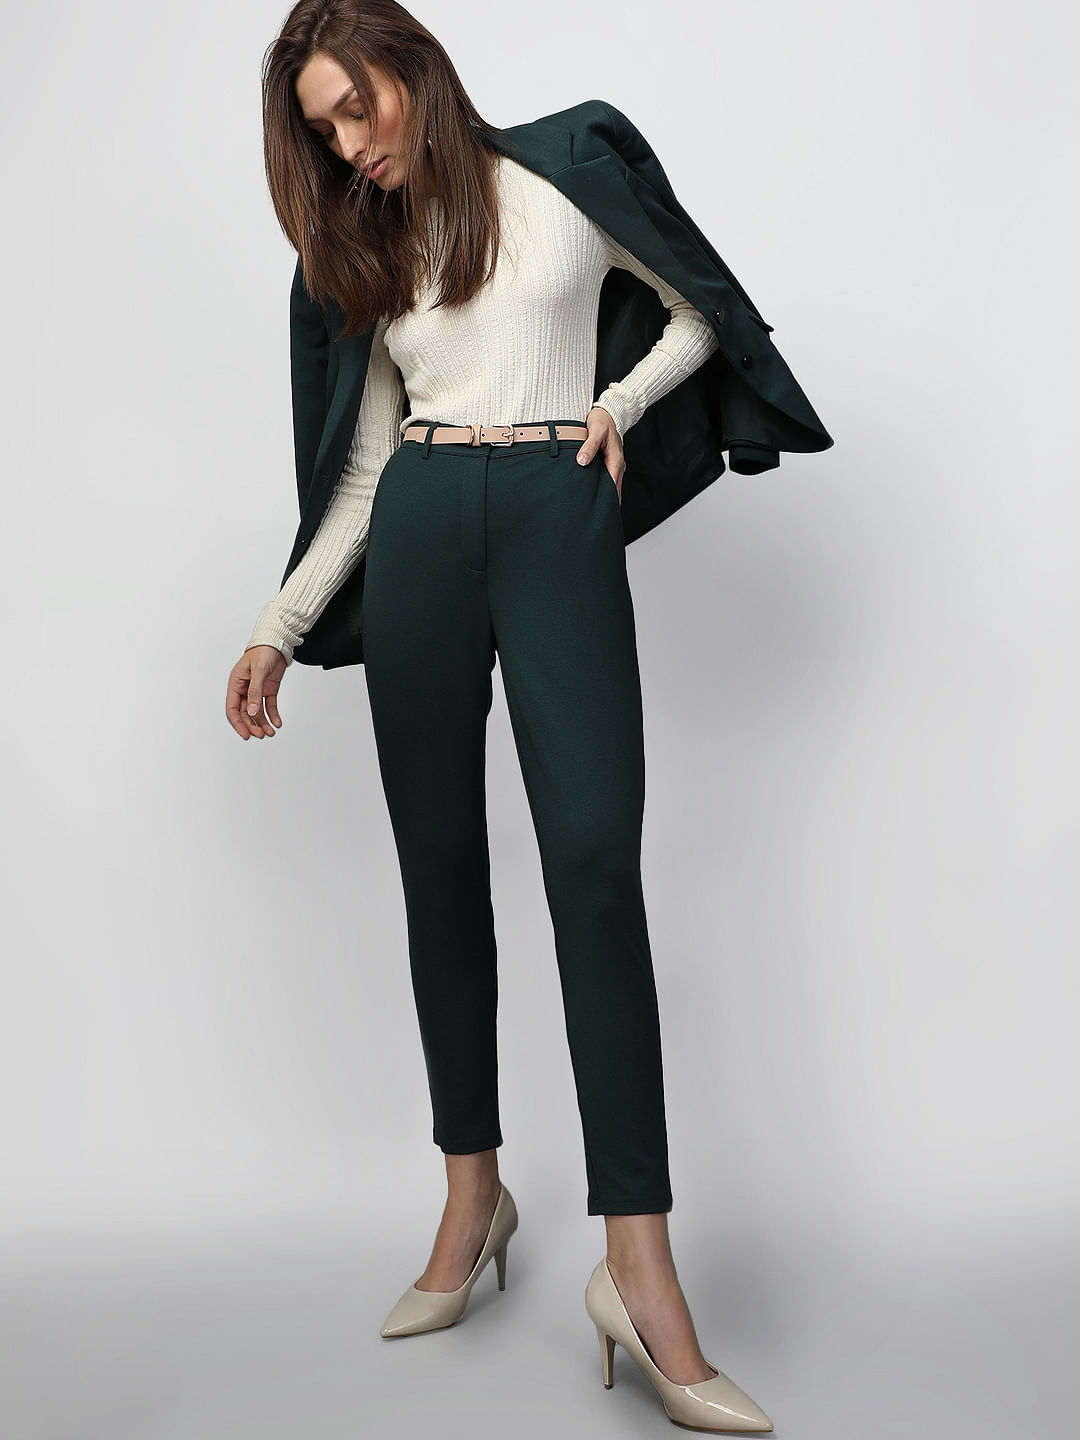 TENIT Slim Fit Men Dark Green Trousers - Buy TENIT Slim Fit Men Dark Green  Trousers Online at Best Prices in India | Flipkart.com